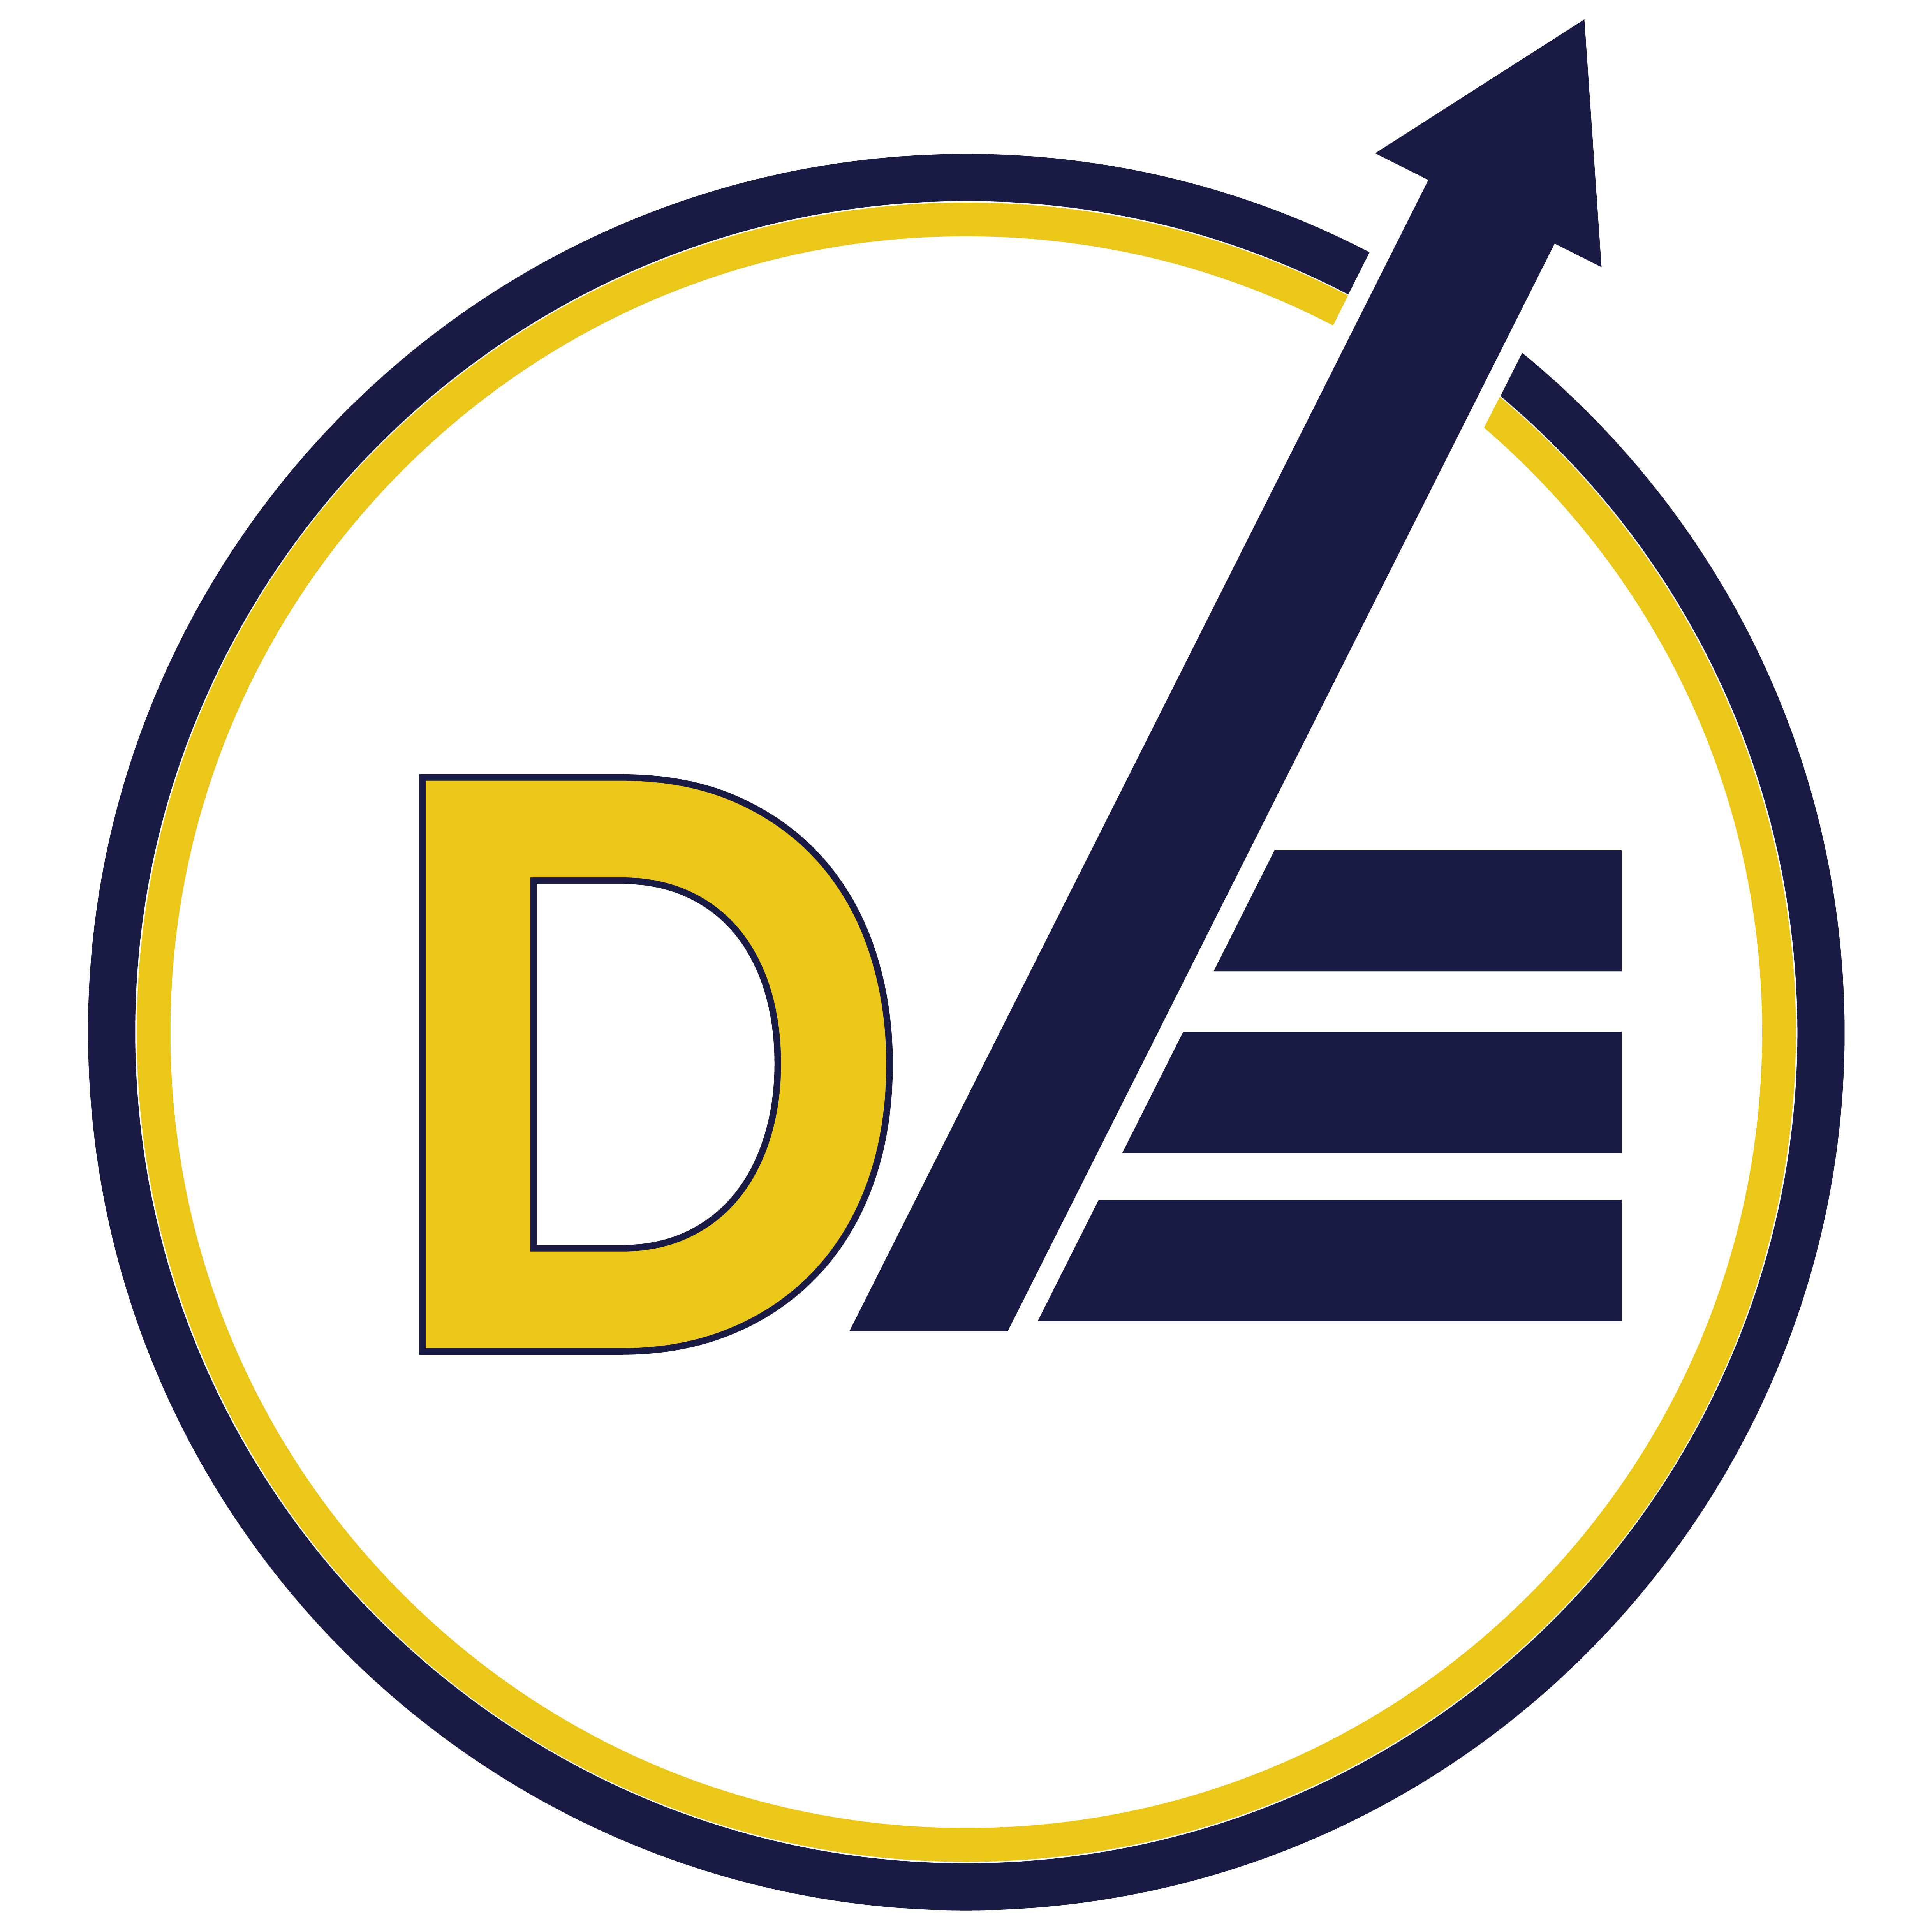 Digital Esitmating LLC's Logo